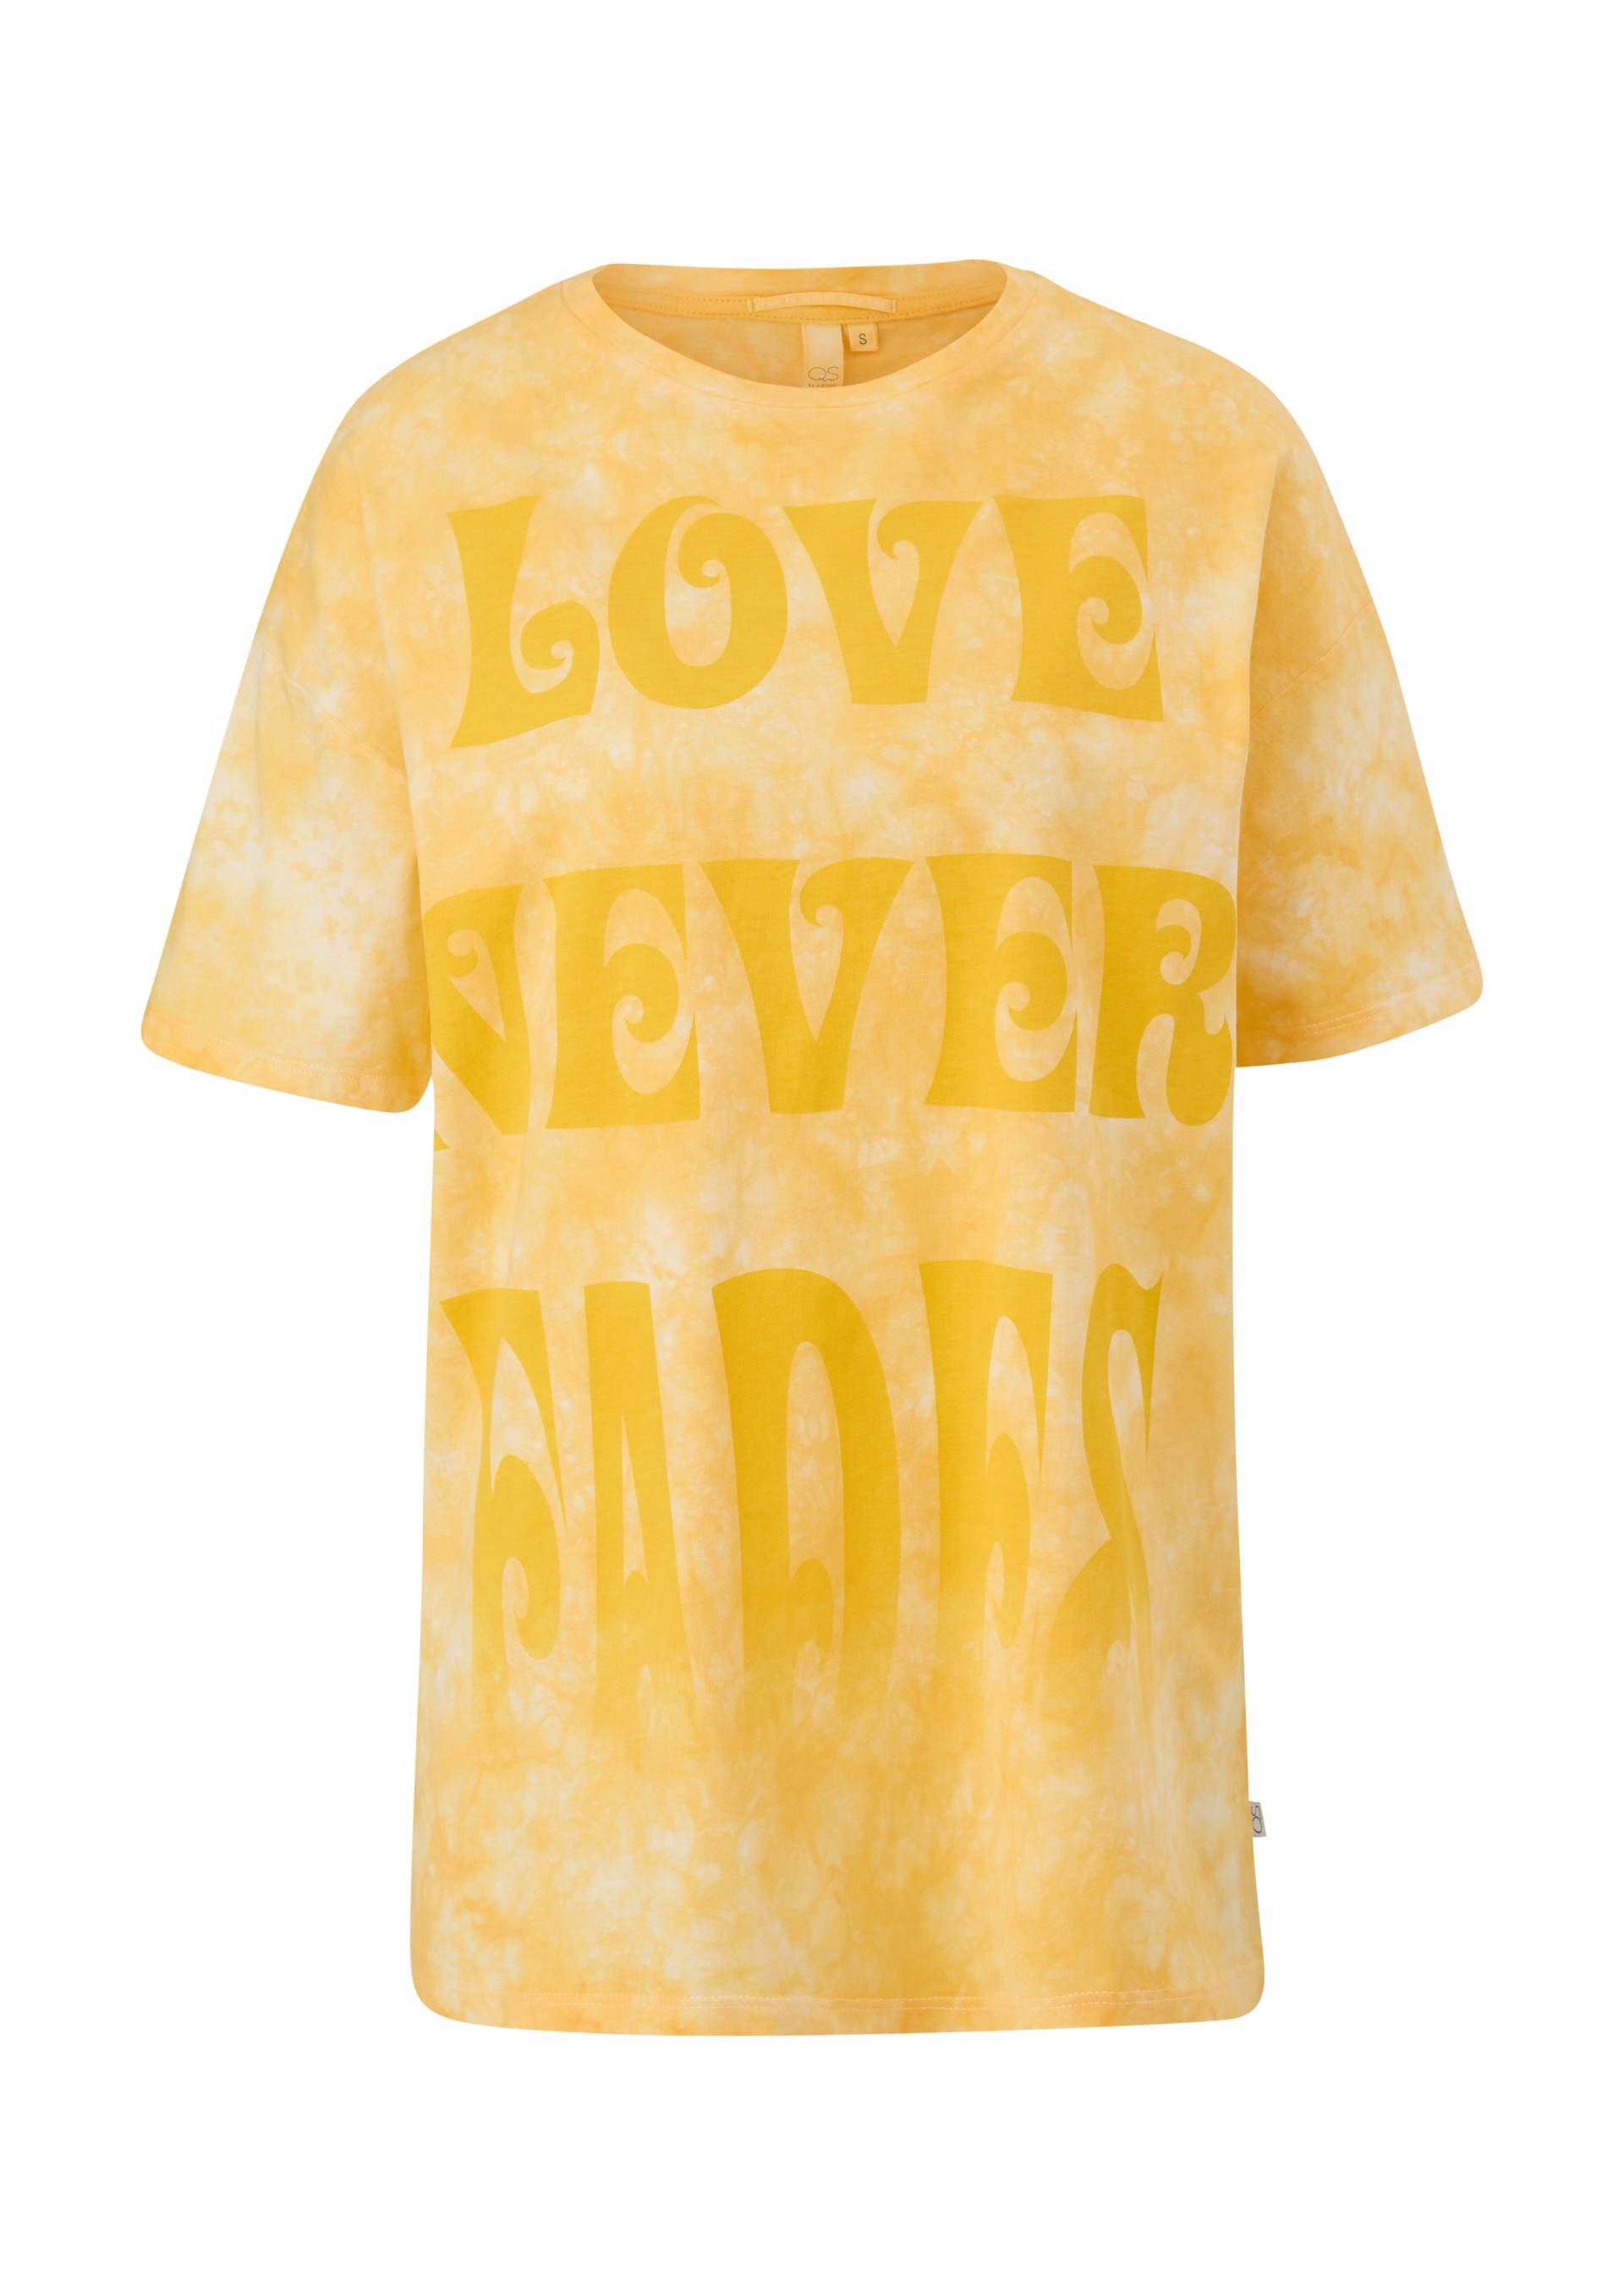 QS - Batikshirt mit Statement-Print, Damen, creme|gelb von QS